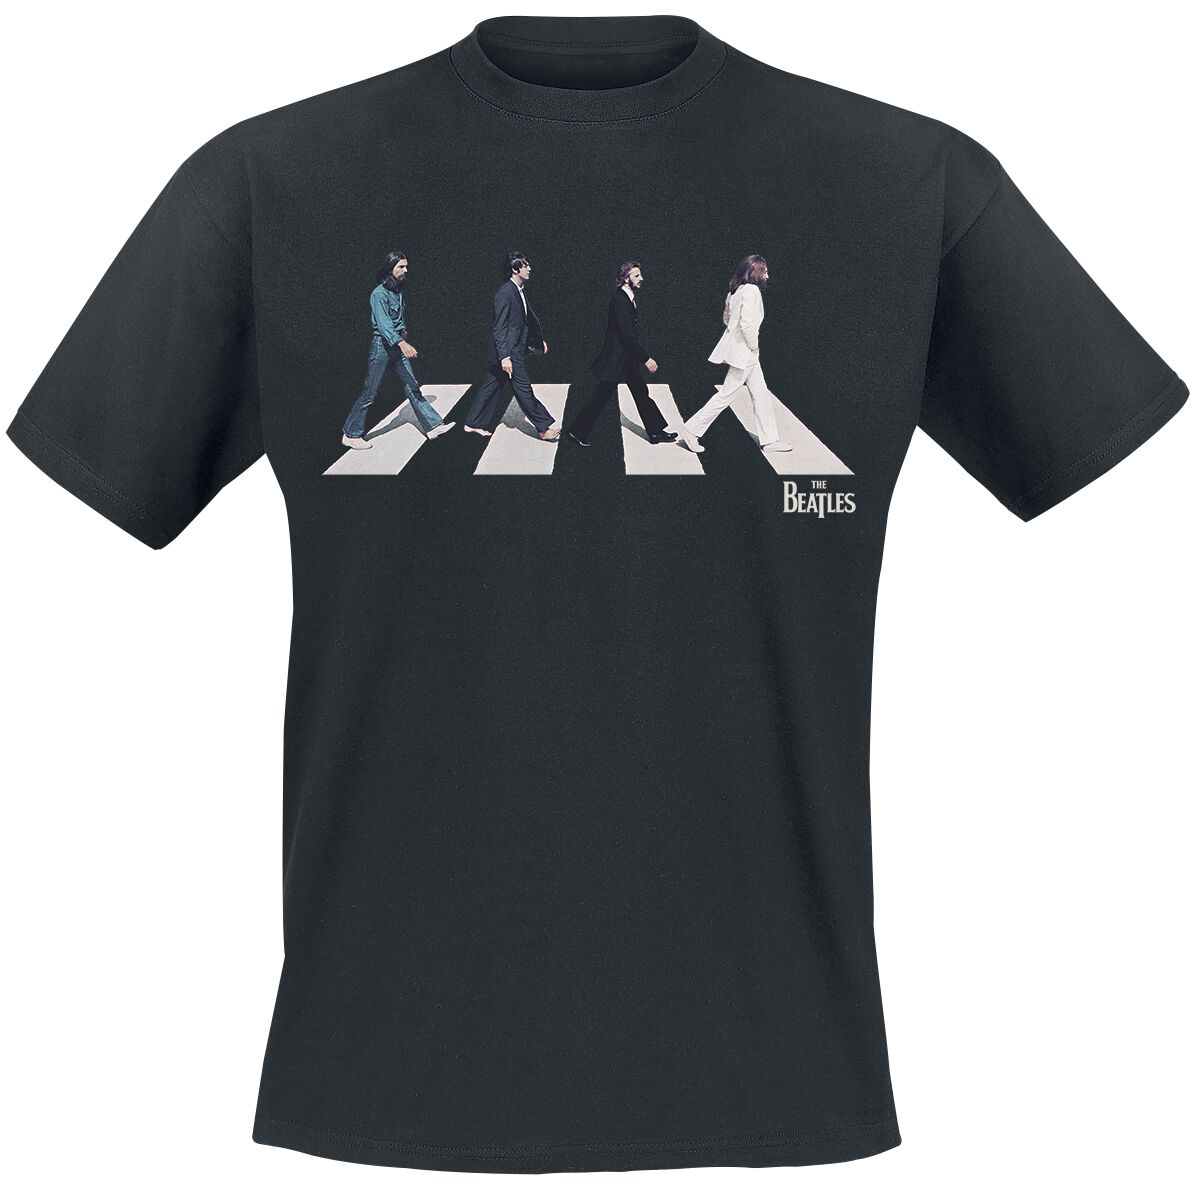 The Beatles T-Shirt - Abbey Road Silhouette - S bis 3XL - für Männer - Größe S - schwarz  - Lizenziertes Merchandise!